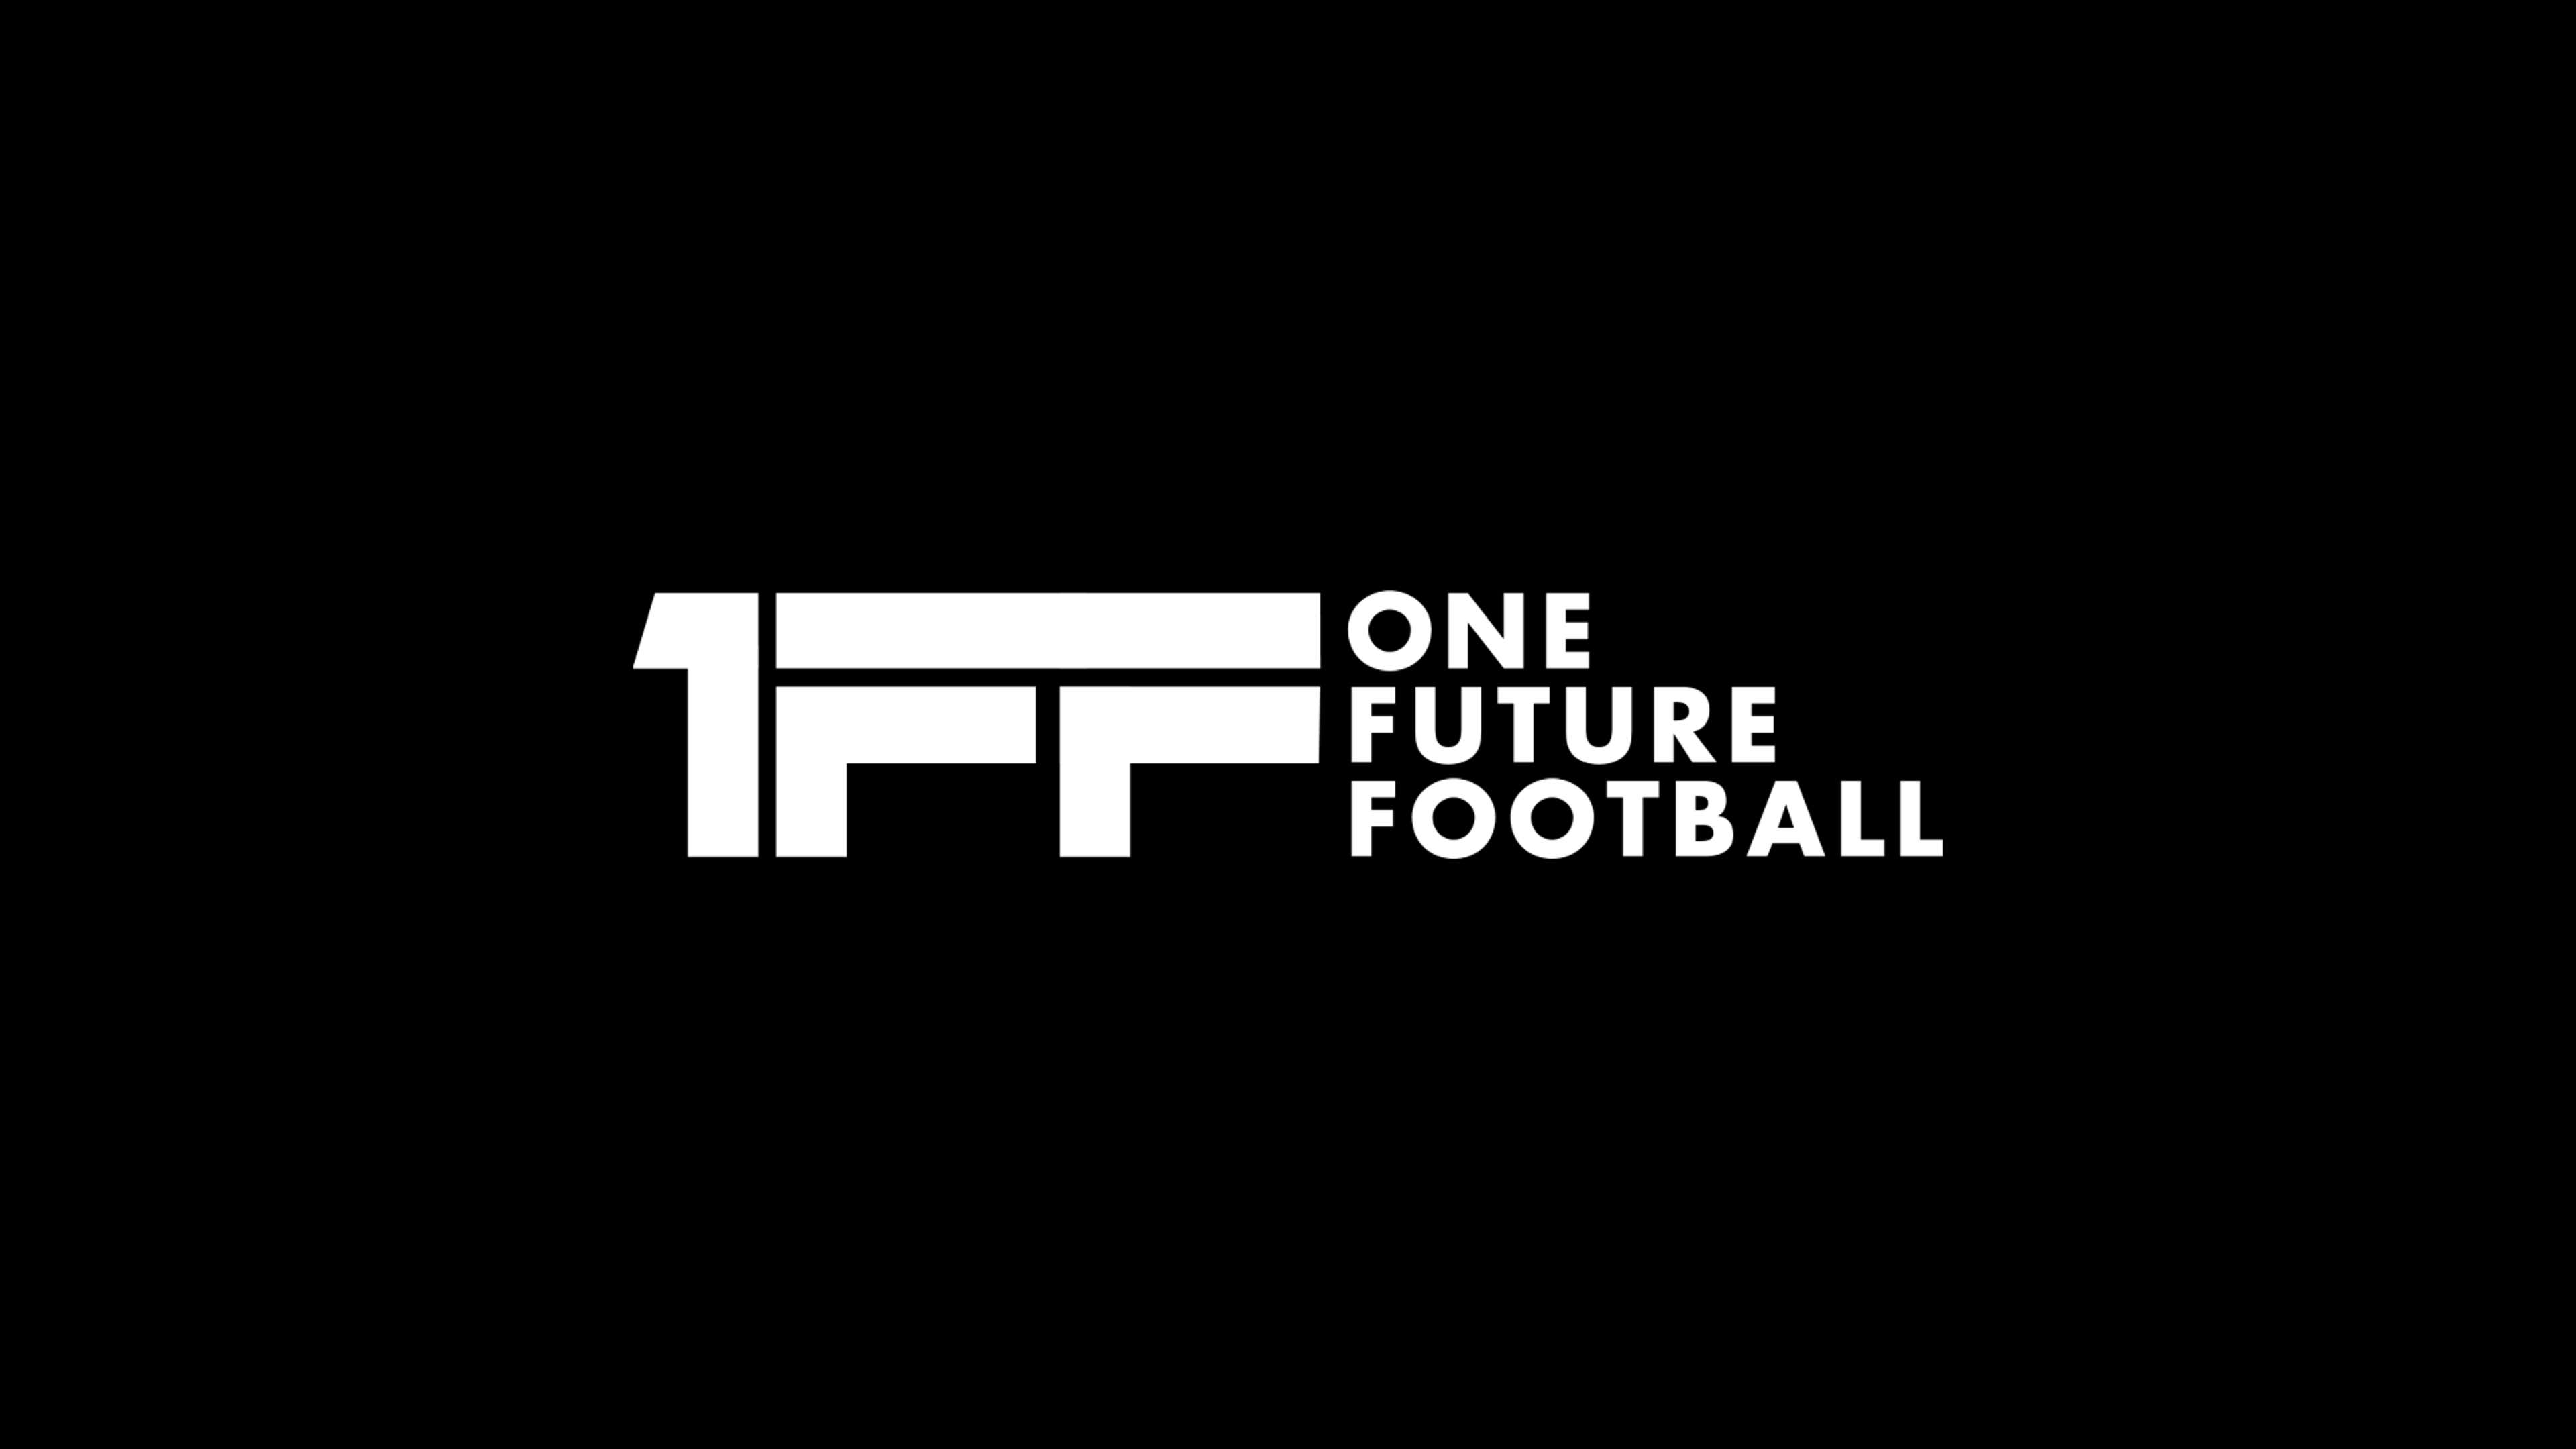 One Future Football